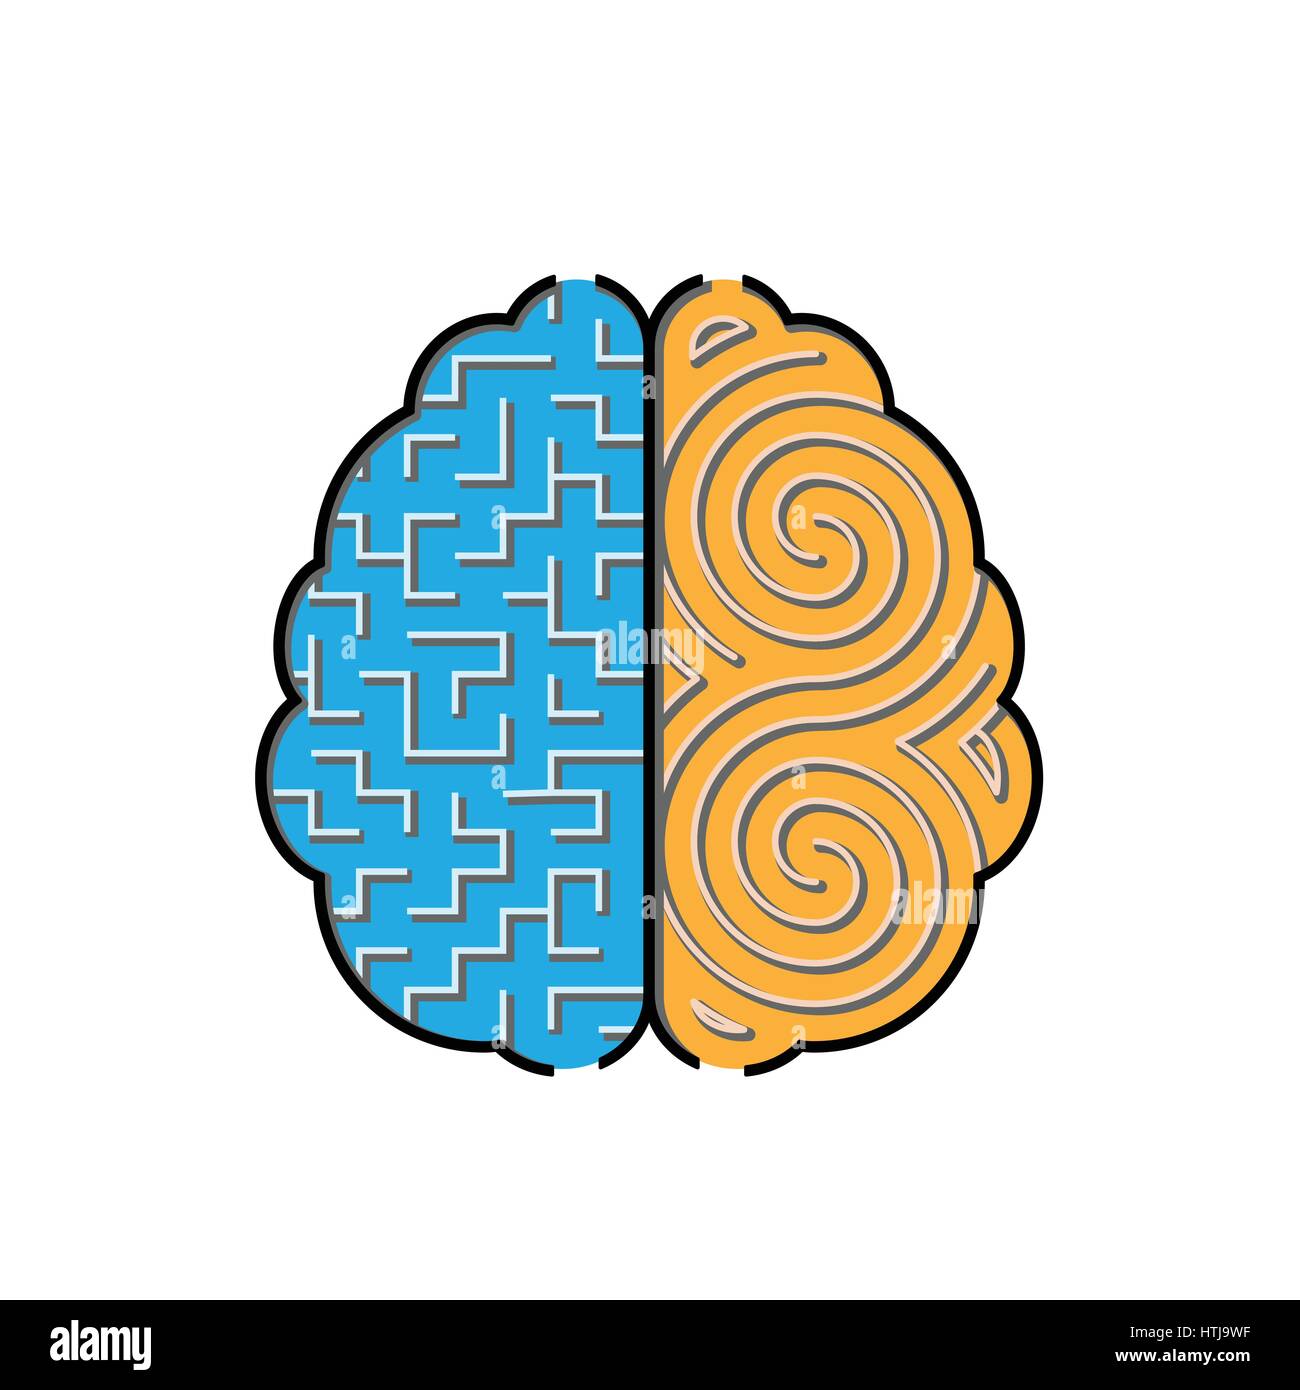 Linke und Rechte Gehirnhälfte Kreativkonzept mit 2 Arten von Labyrinthen im Inneren. Stock Vektor